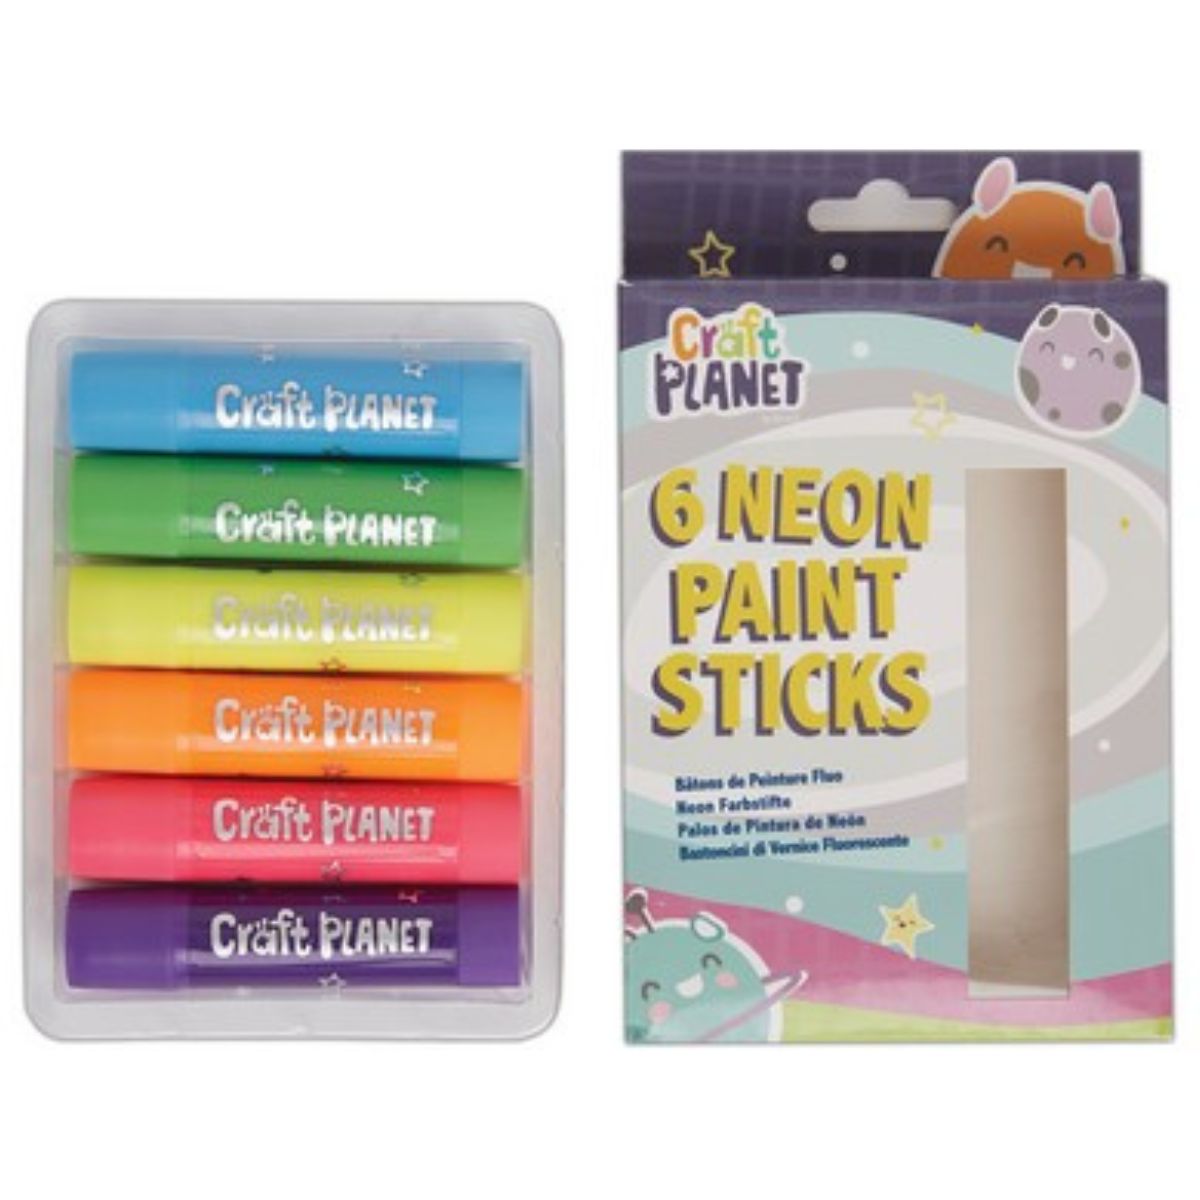 6 Paint Sticks, Neon